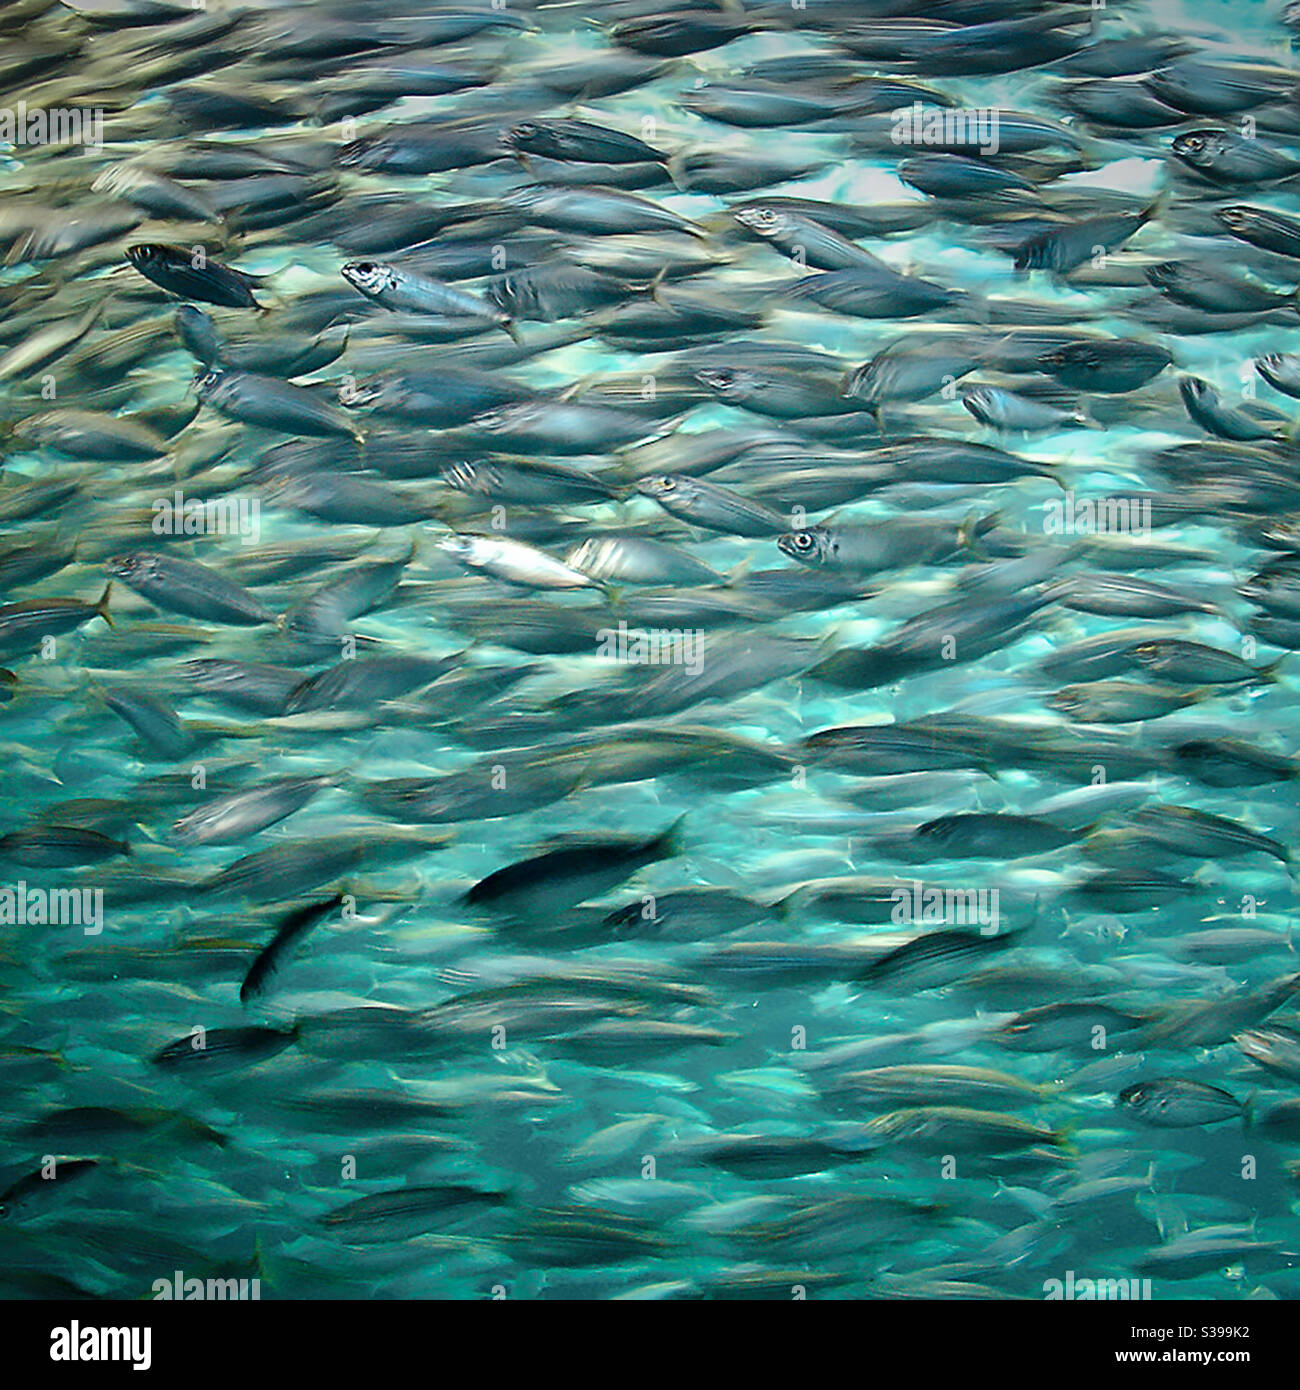 Ein Schwarm von Sardinen Fische schwimmen dicht gedrängt zusammen Seite an Seite durch das blaue Wasser Stockfoto